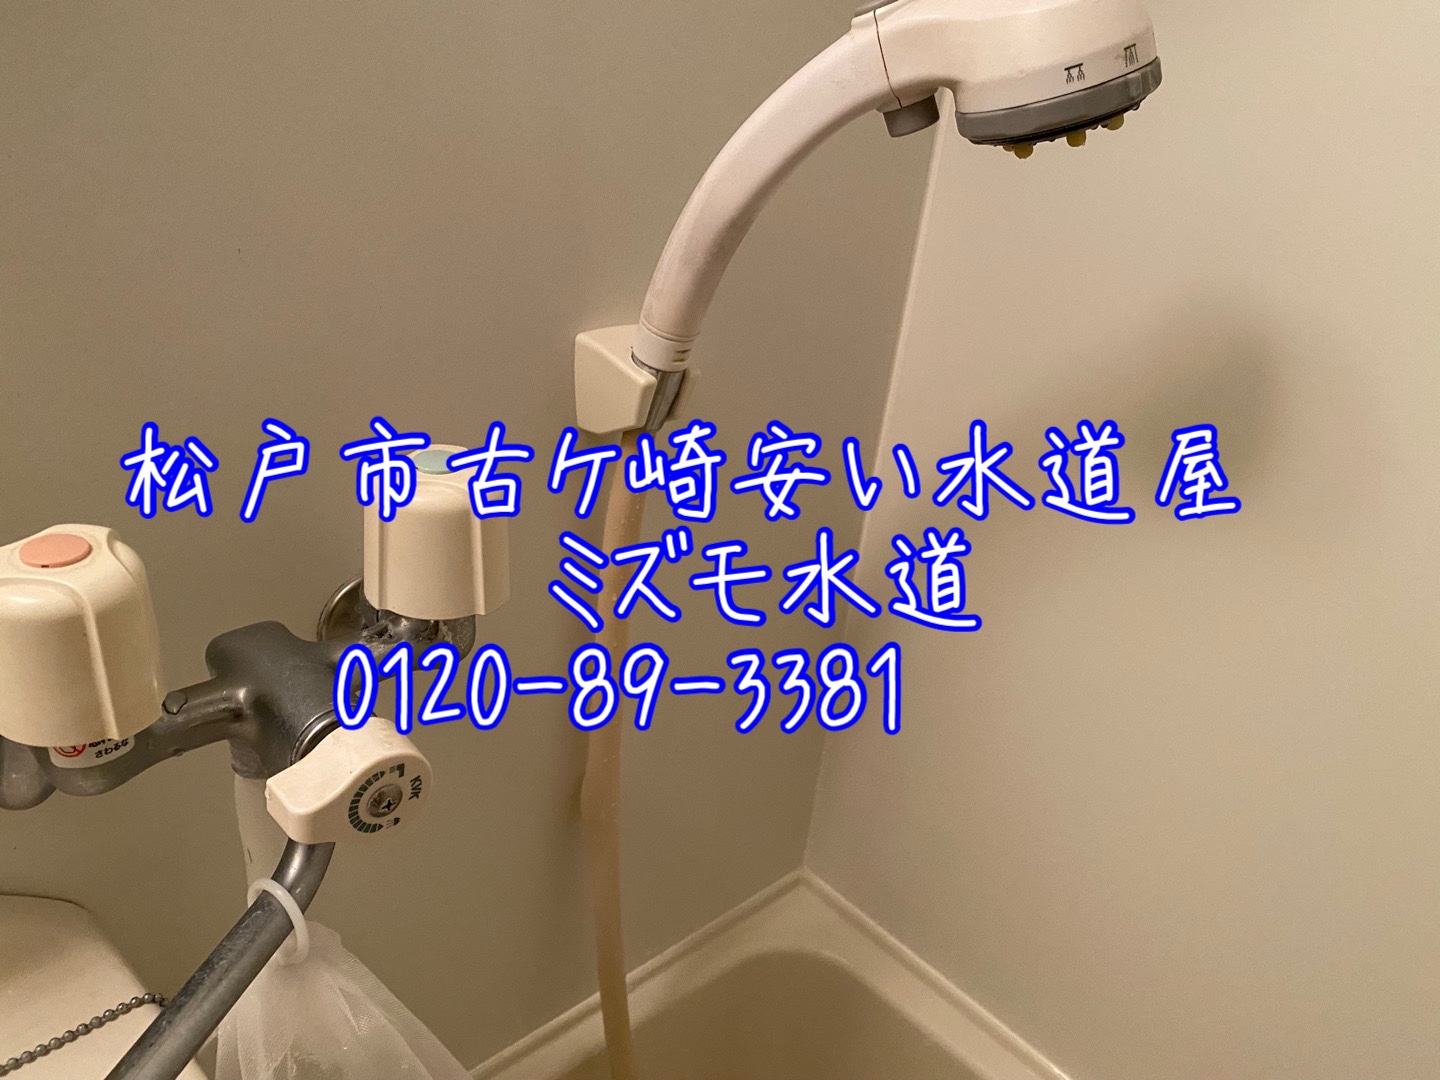 松戸市マンションユニットバスシャワー水栓水漏れ修理蛇口交換